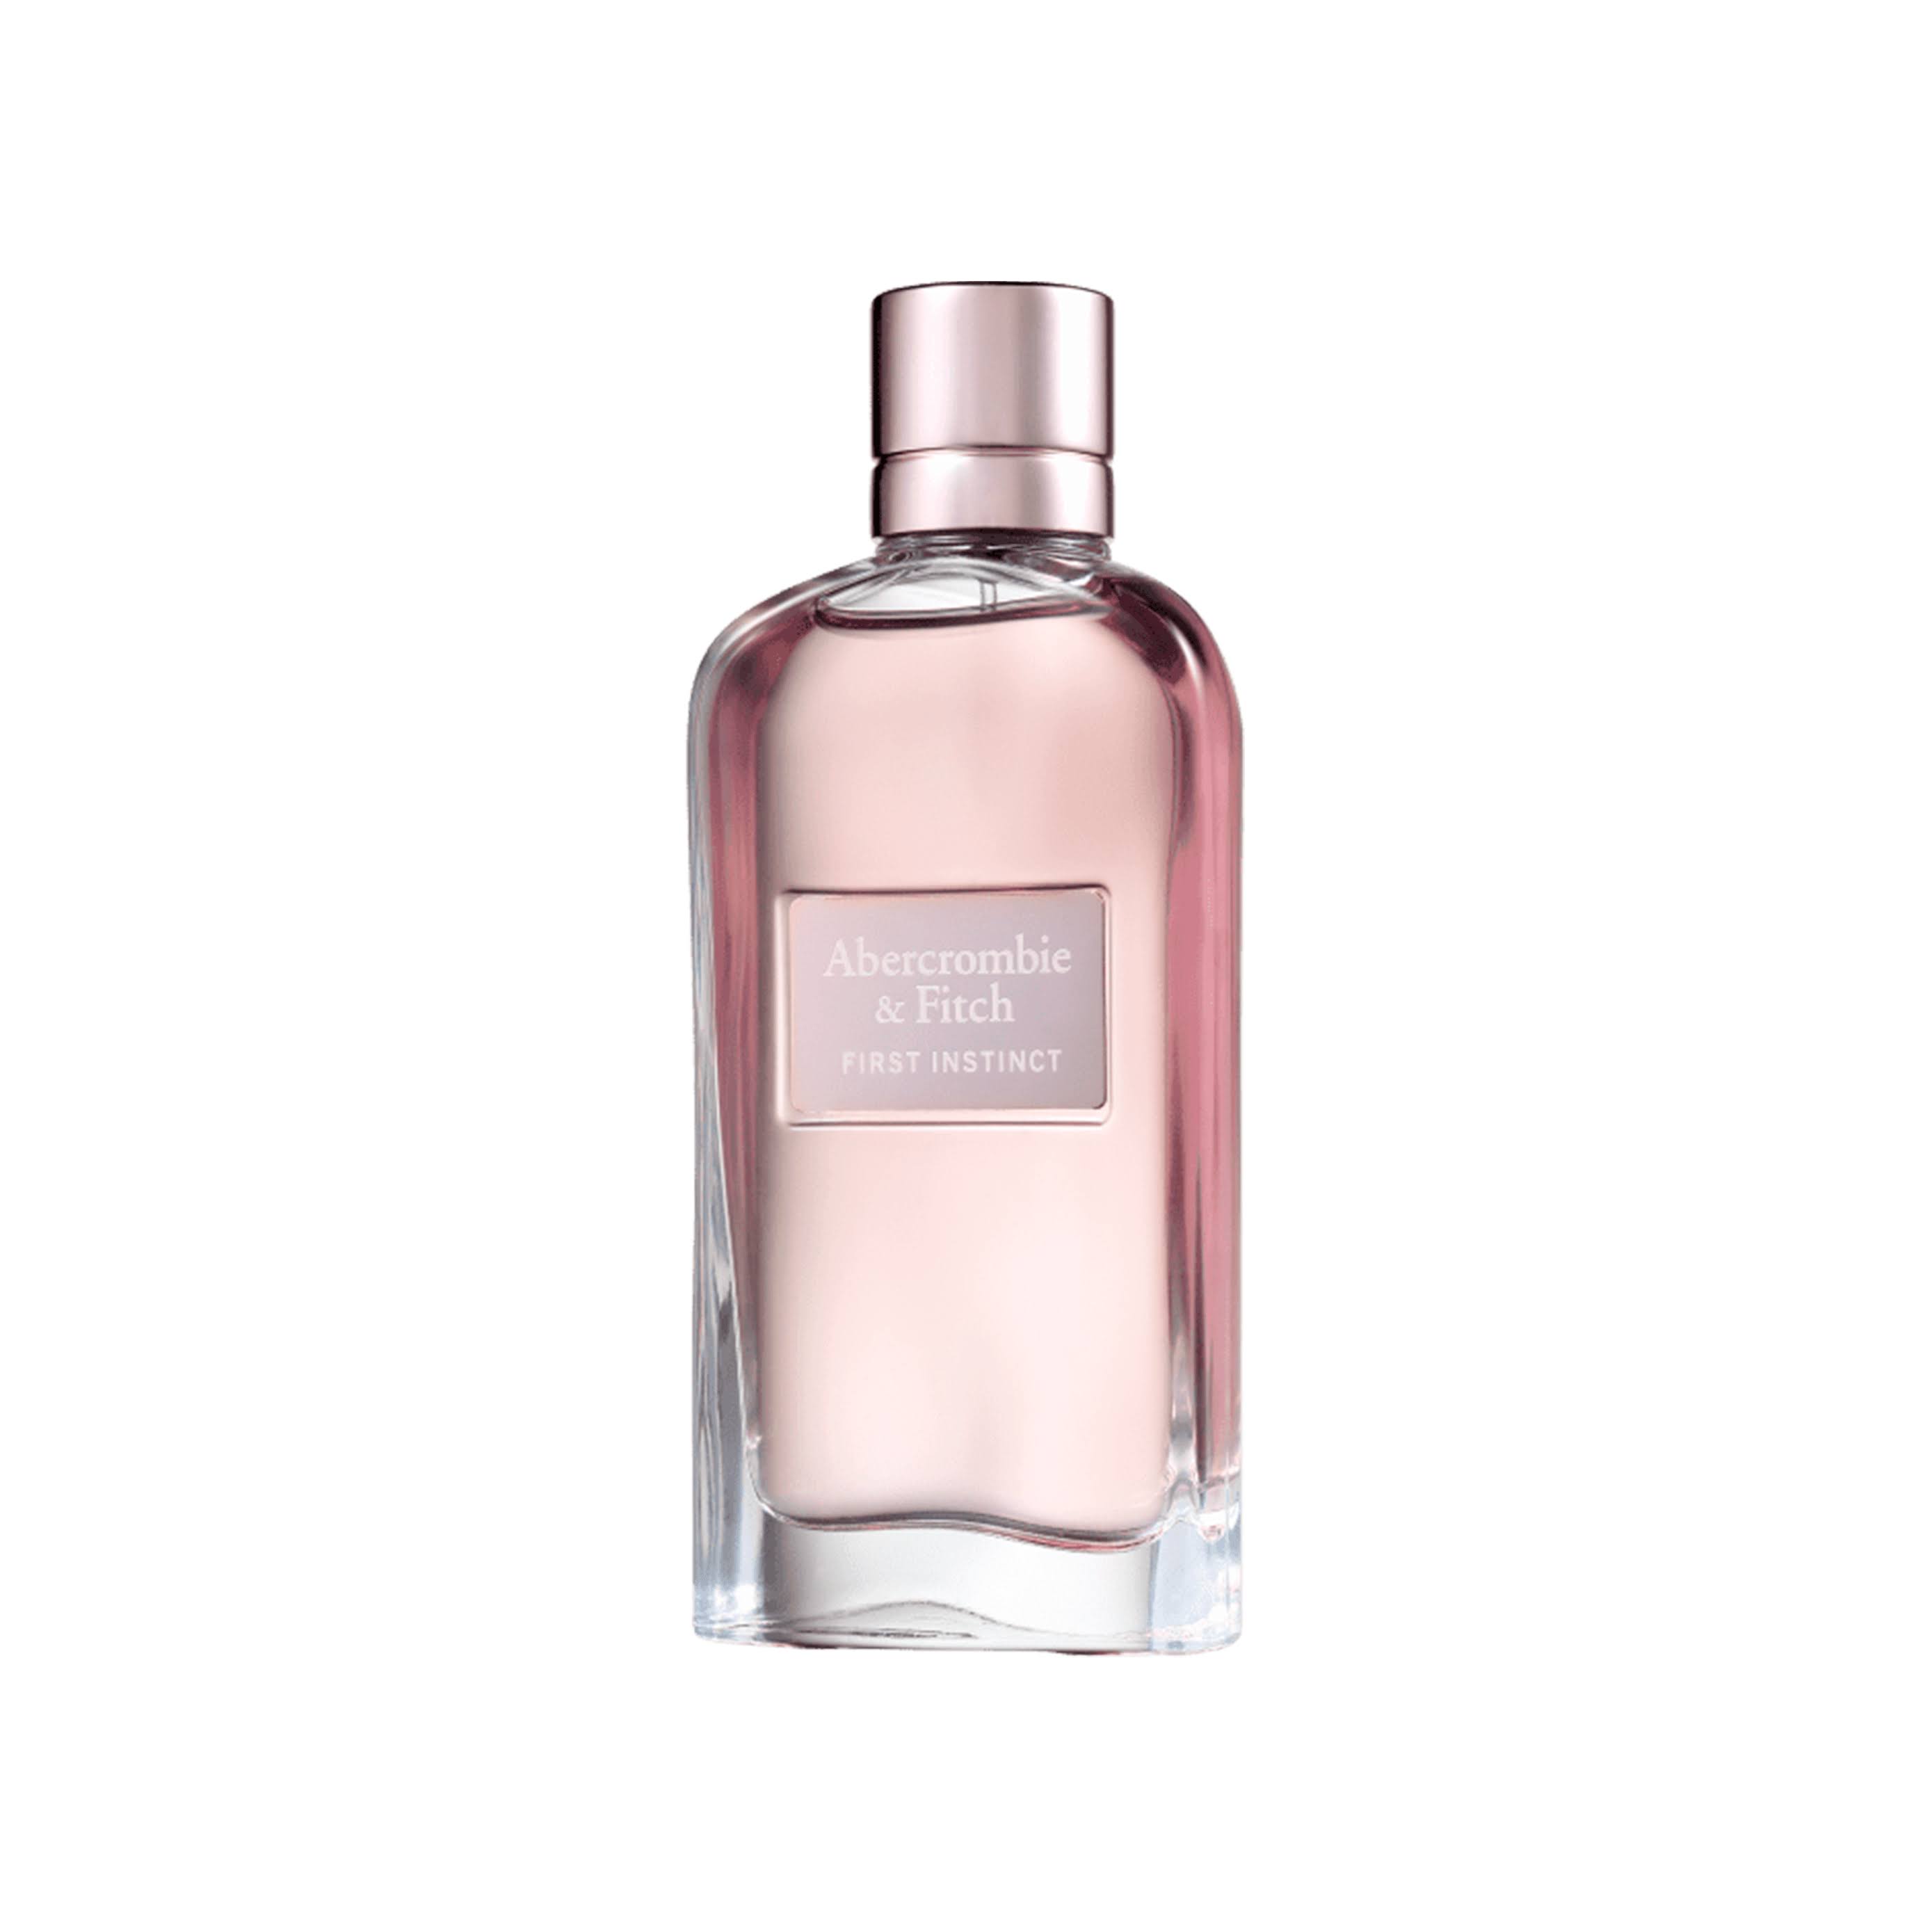 Abercrombie & Fitch First Instinct Eau De Parfum for Women - 1.7oz